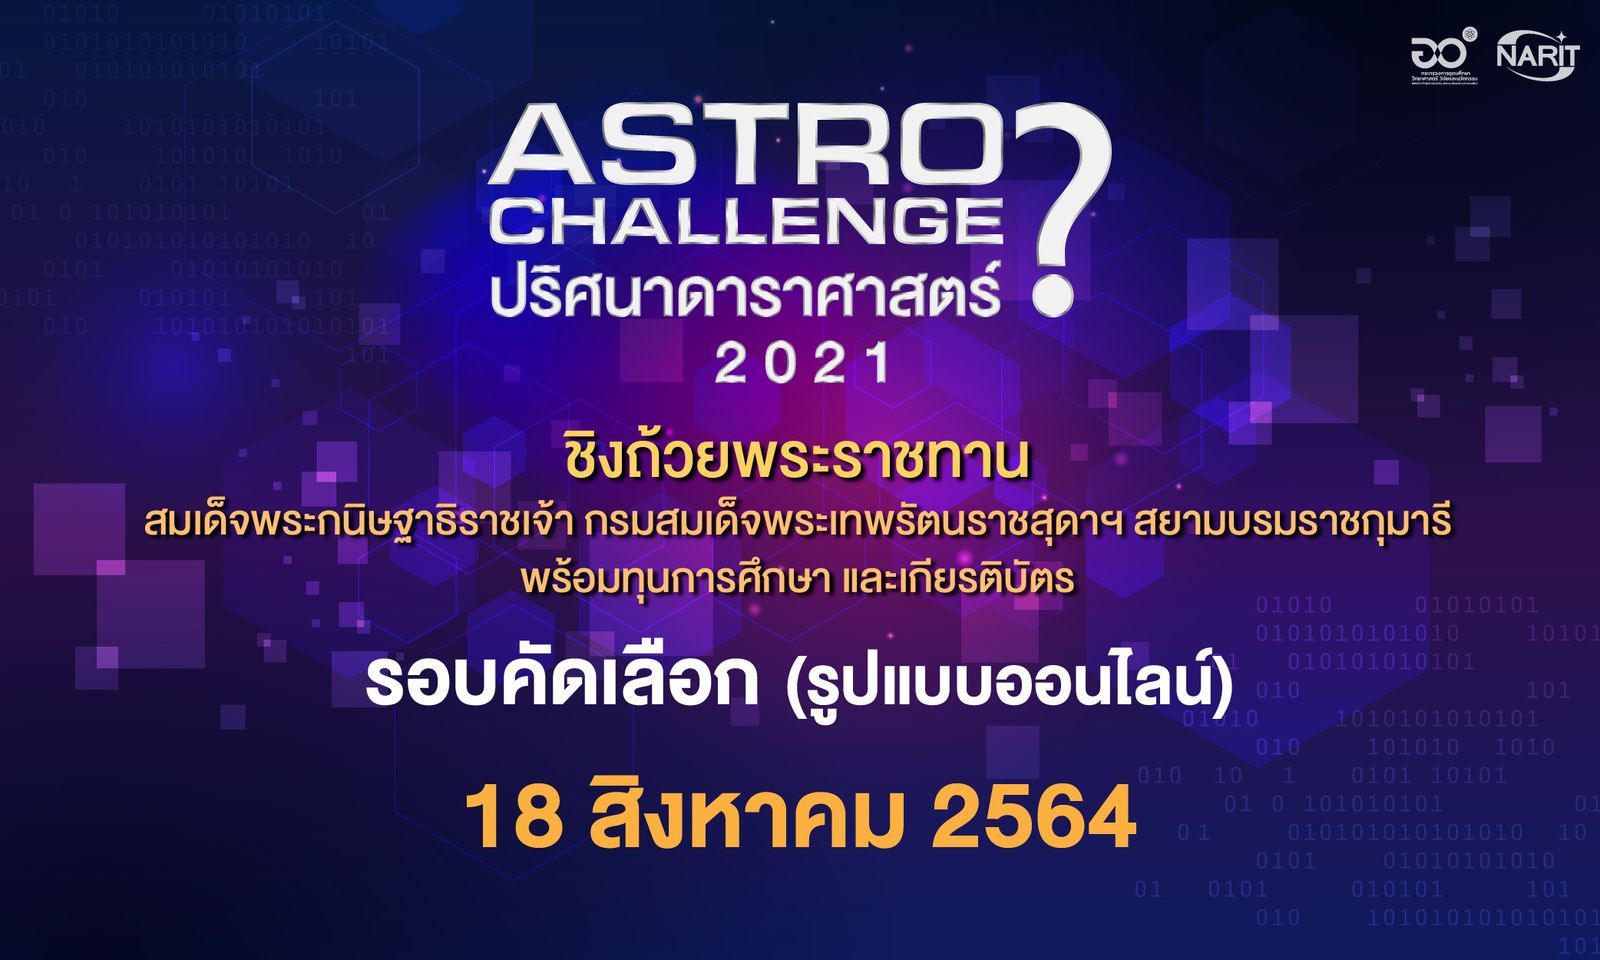 รายละเอียดการแข่งขัน Astro Challenge ปริศนาดาราศาตร์ รอบคัดเลือก